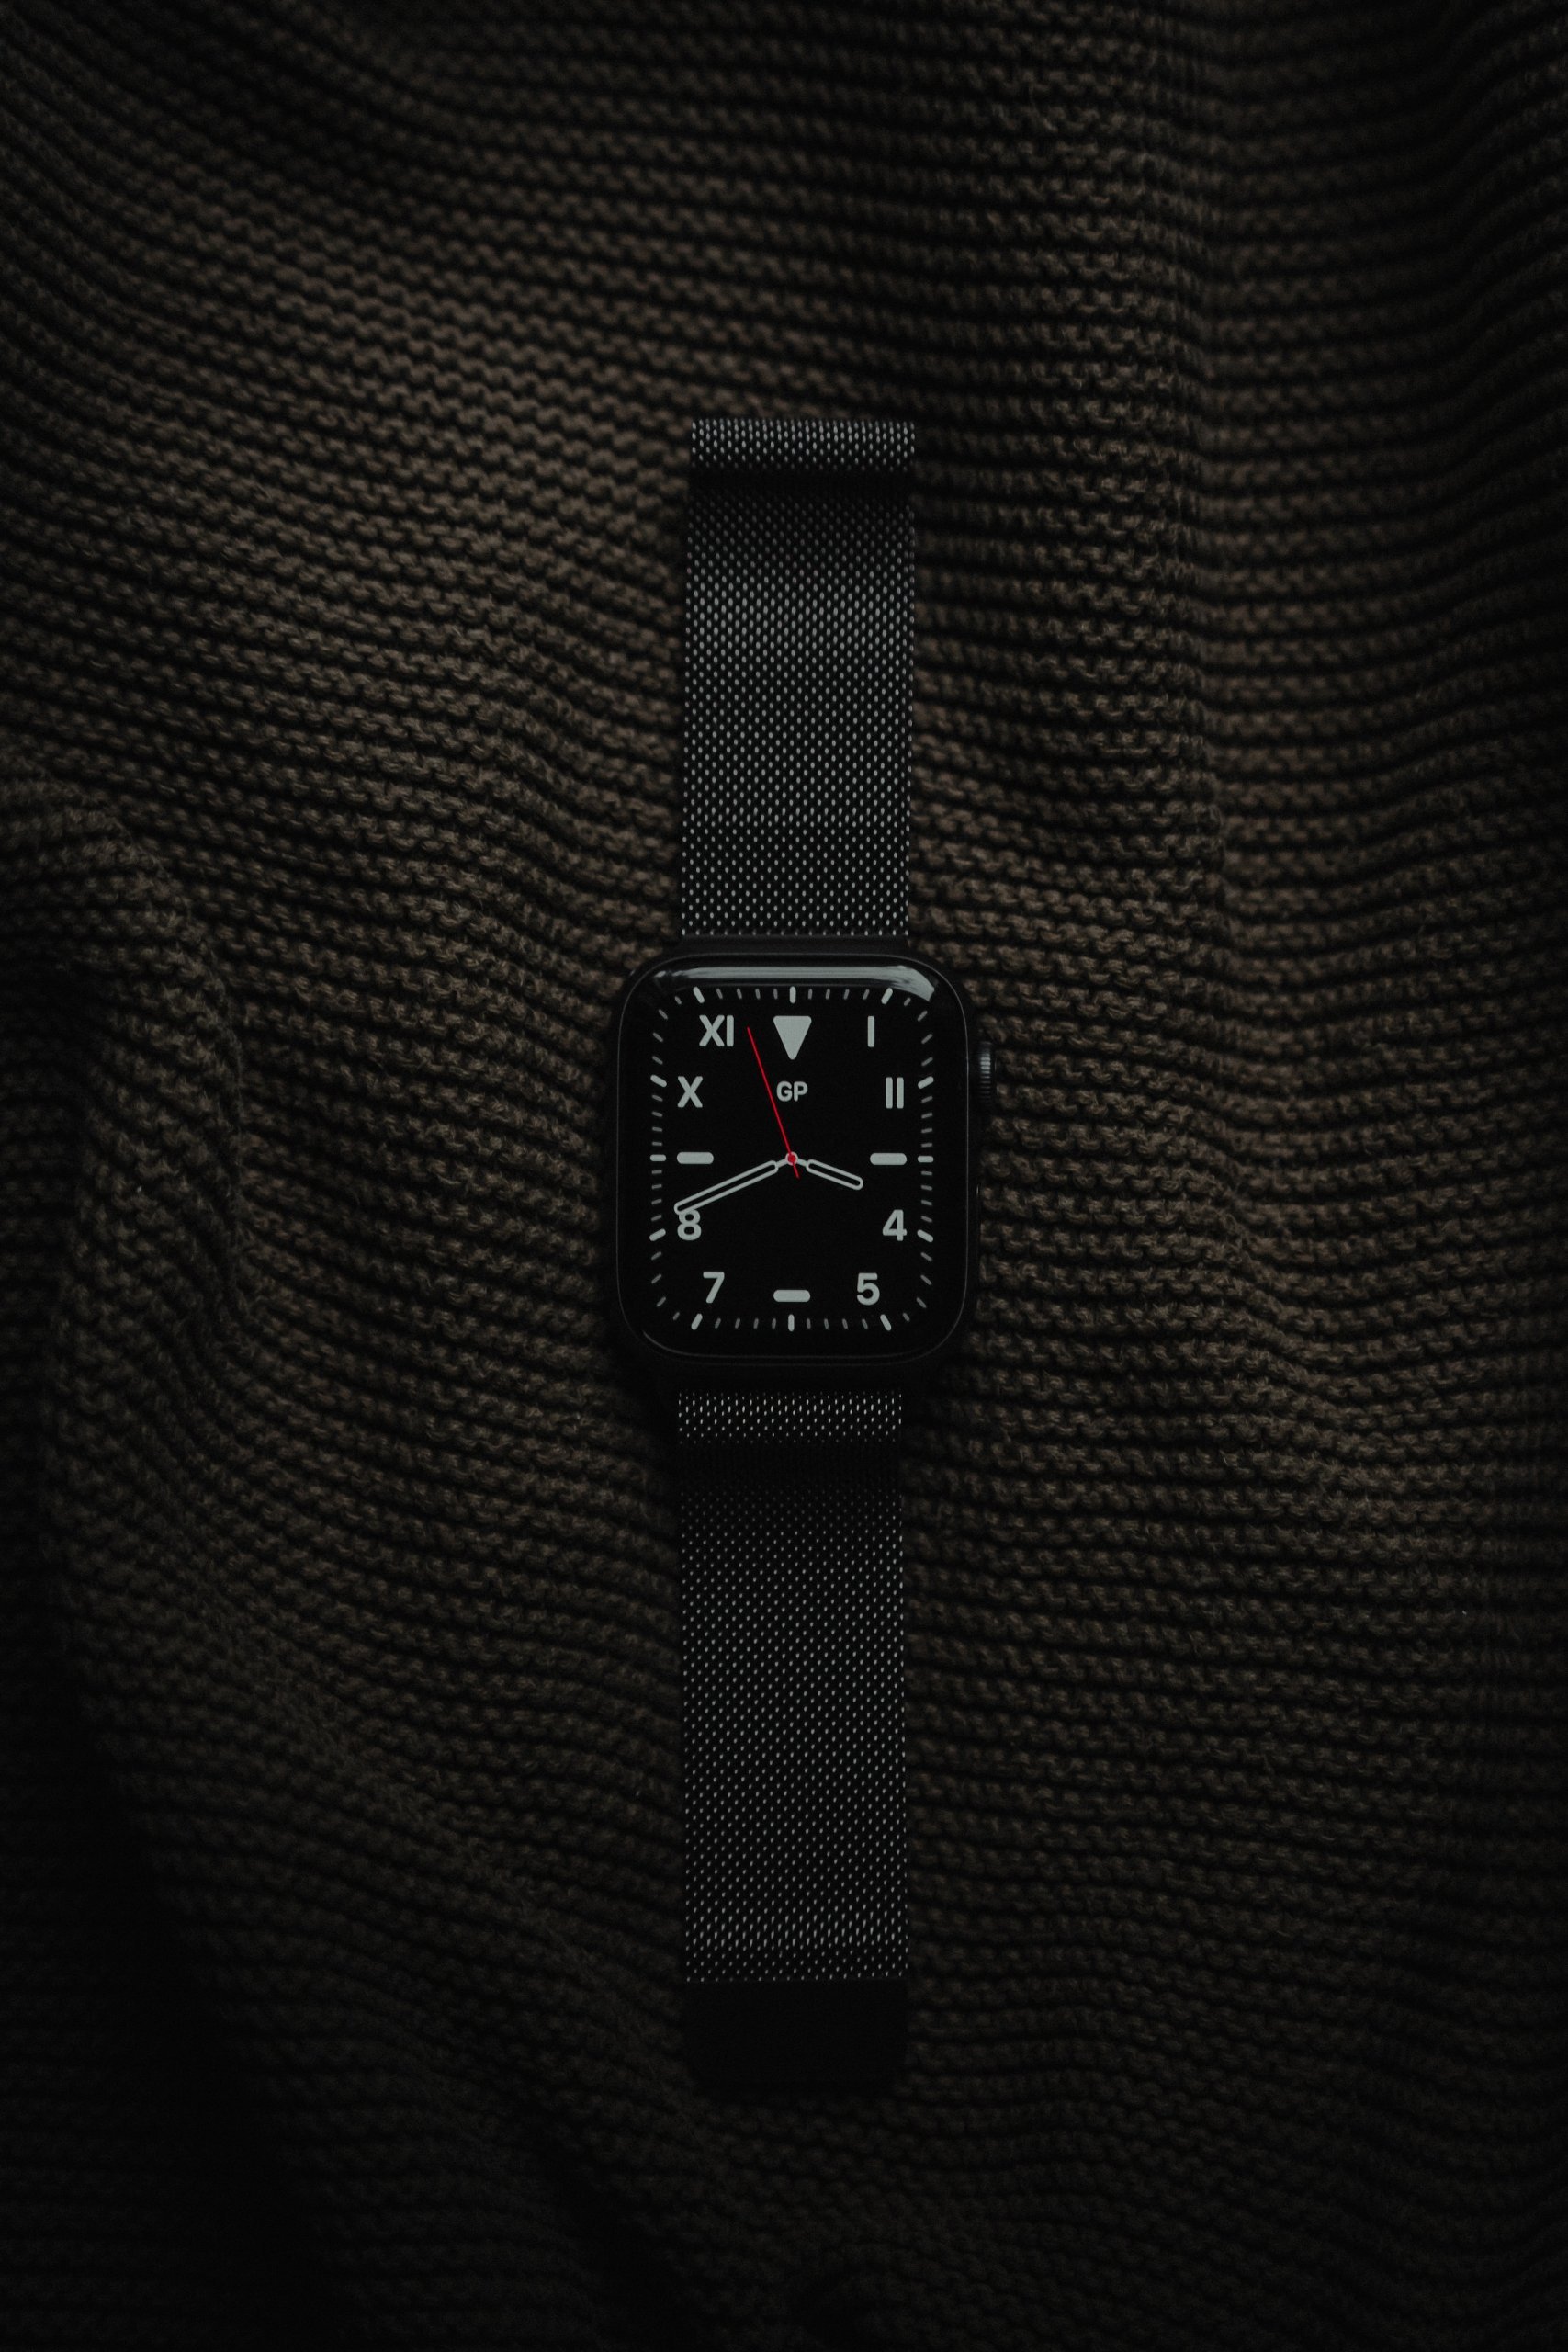 ３万円台まで 黒のメンズ腕時計のコスパ デザインgoodな名品はコレだ メンズファッションメディア Otokomaeotokomae 男前研究所